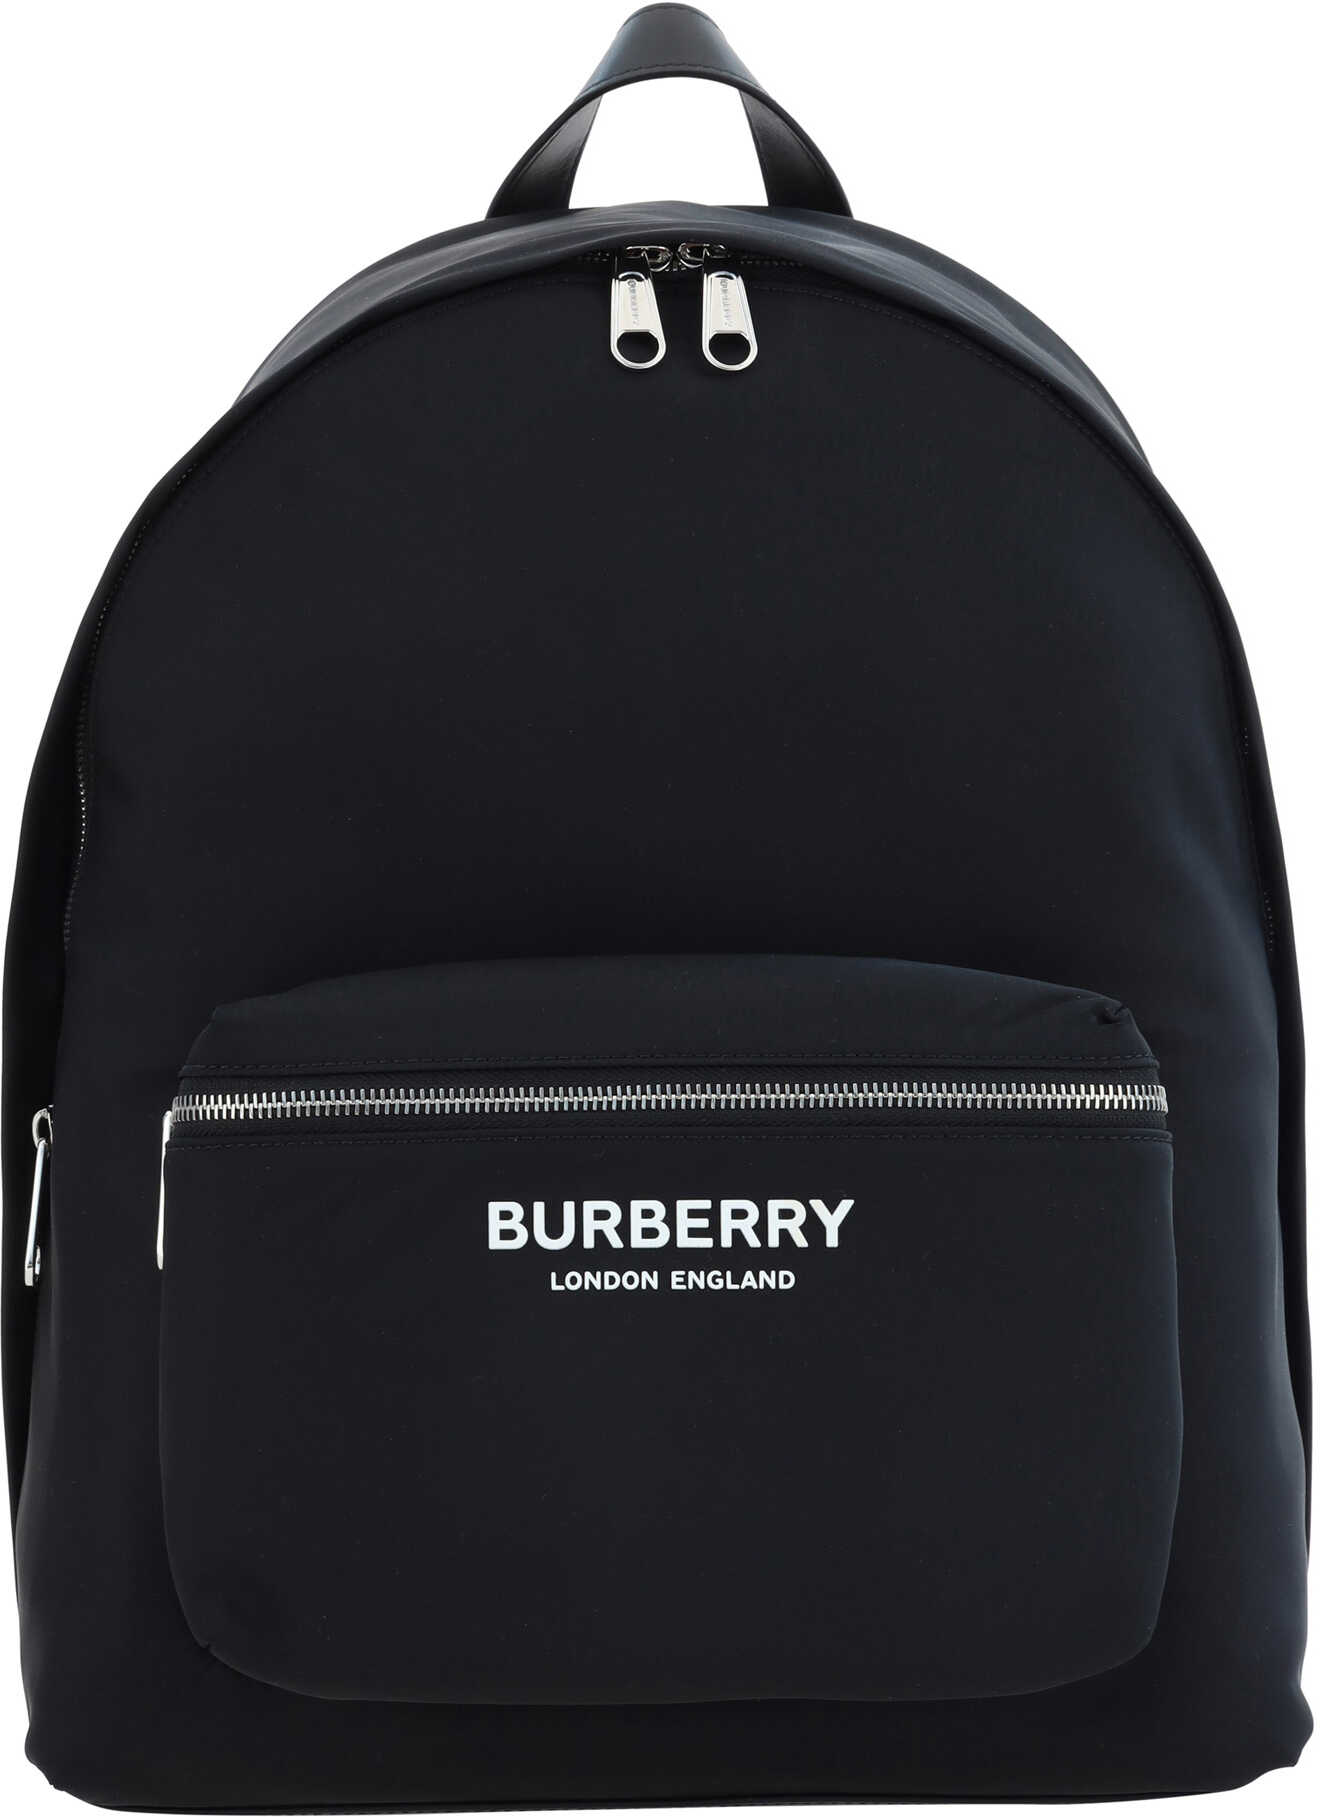 Burberry Jett Backpack BLACK